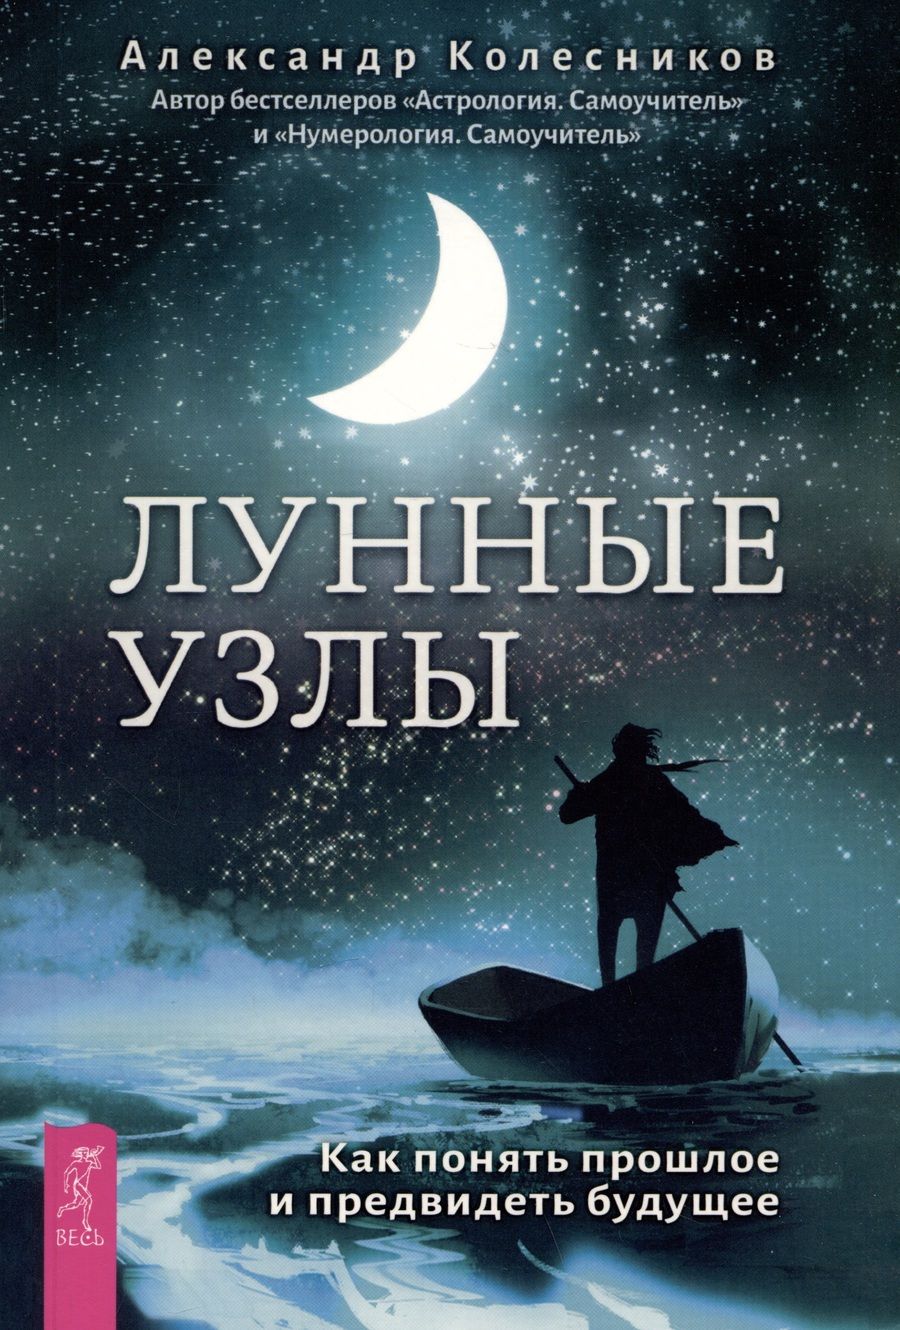 Обложка книги "Колесников: Лунные узлы. Как понять прошлое и предвидеть будущее"